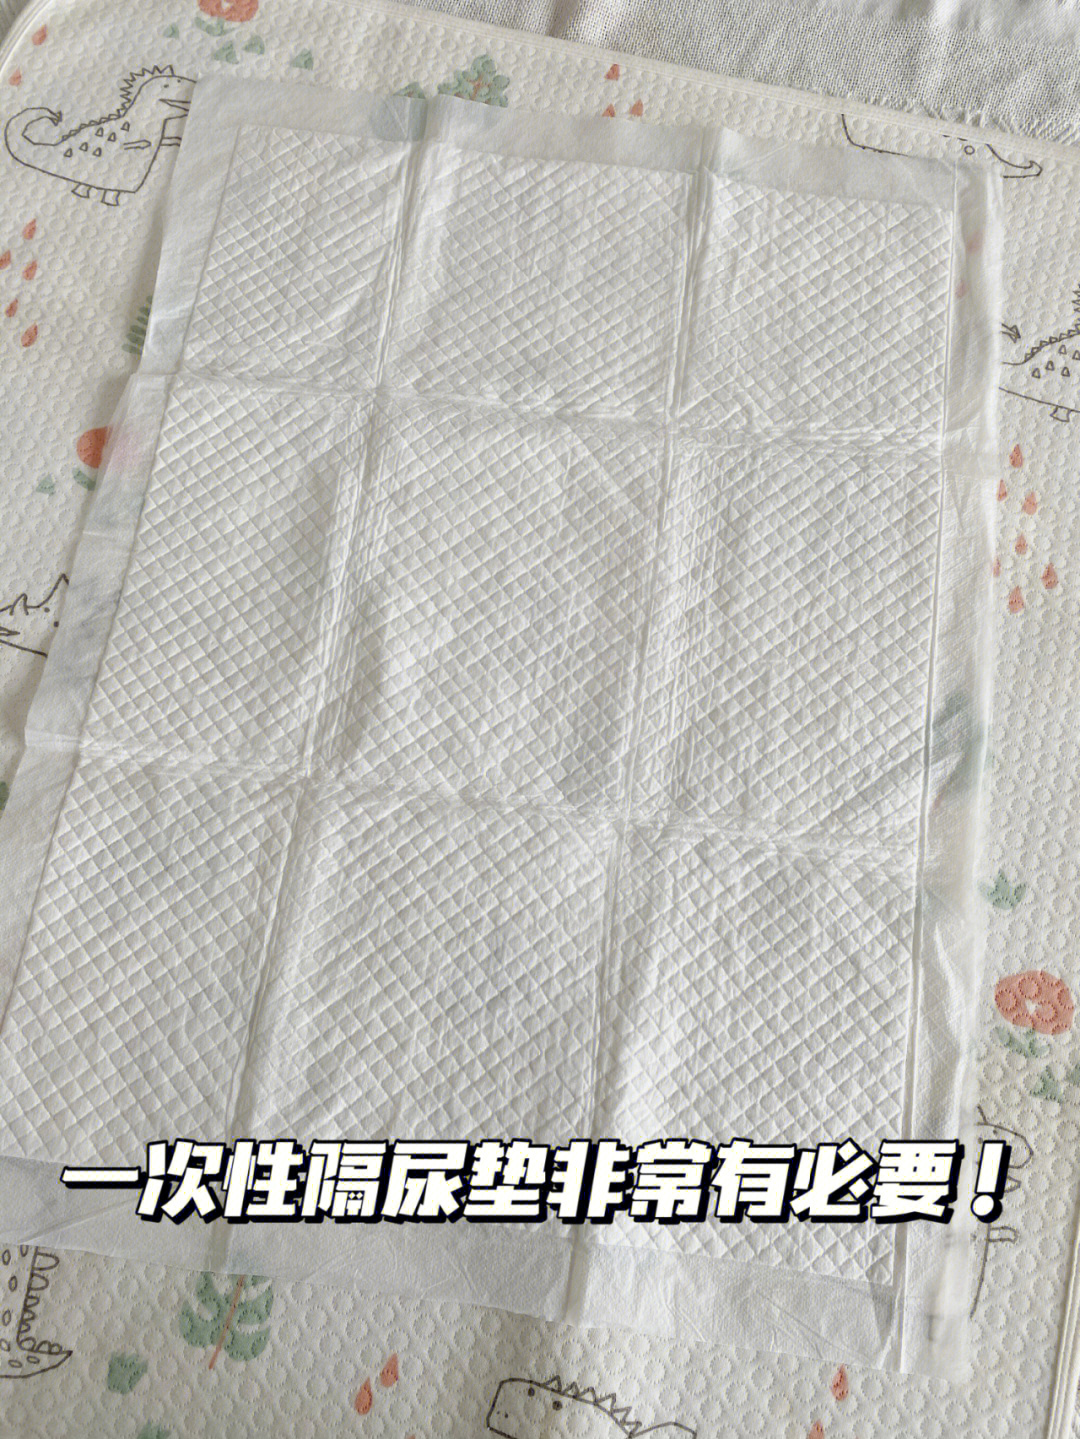 纸尿垫的正确垫法图解图片